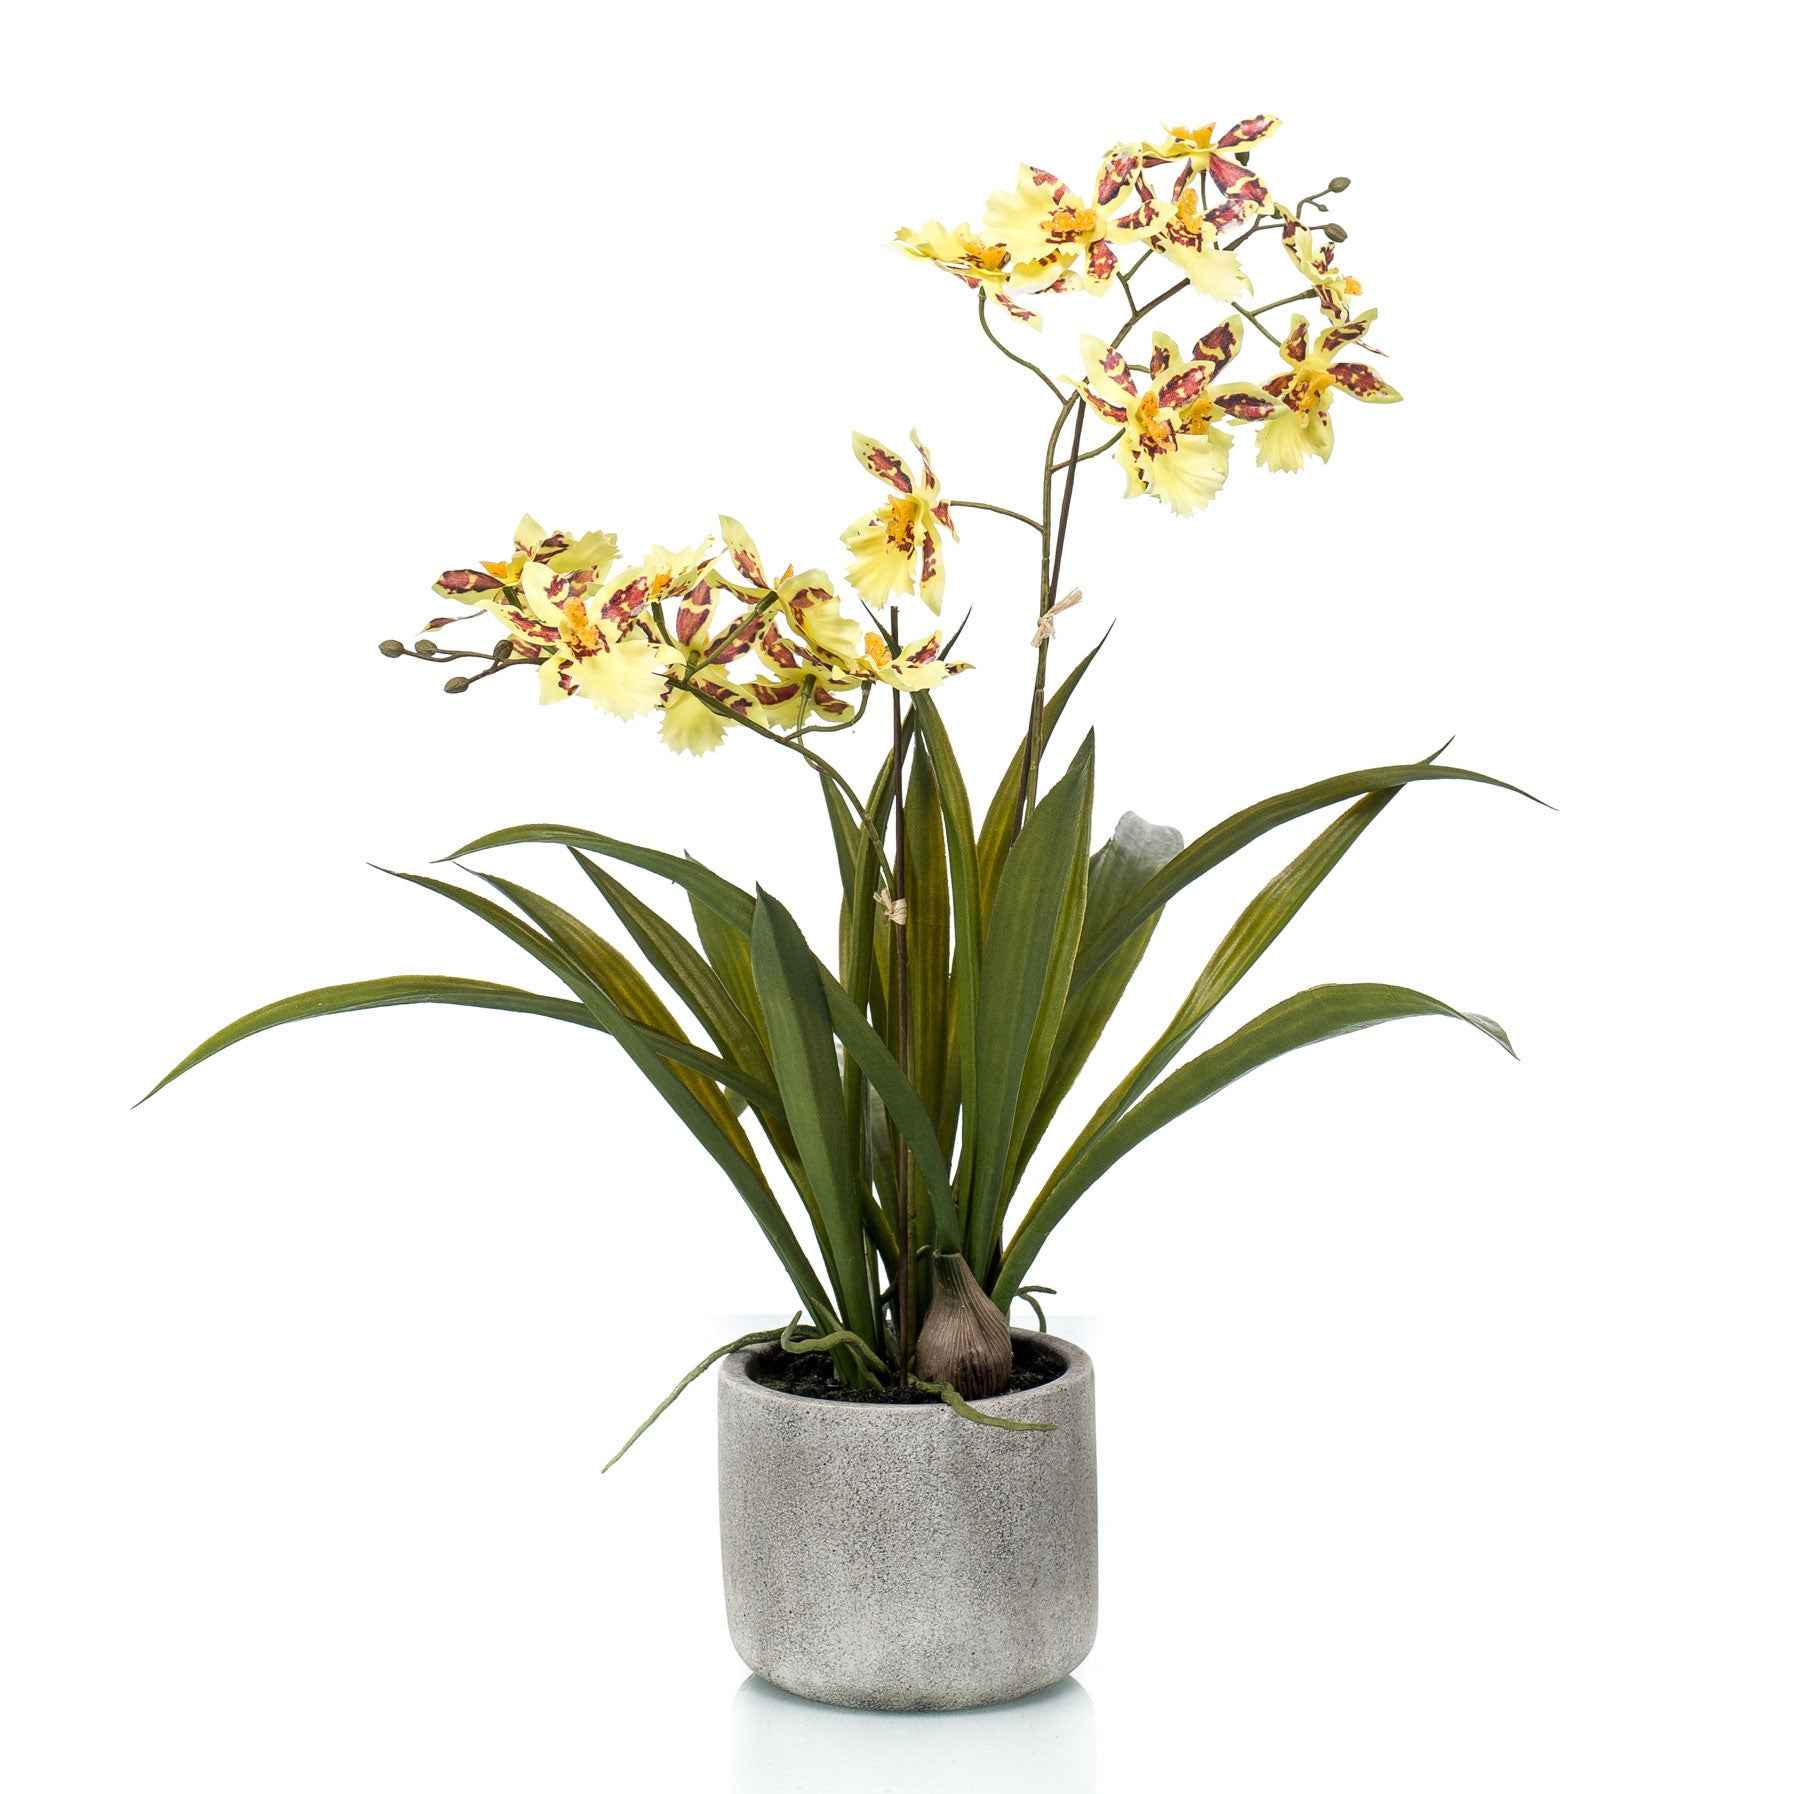 Kunstplant Orchidee Oncidium geel incl. keramische sierpot - Alle kunstplanten